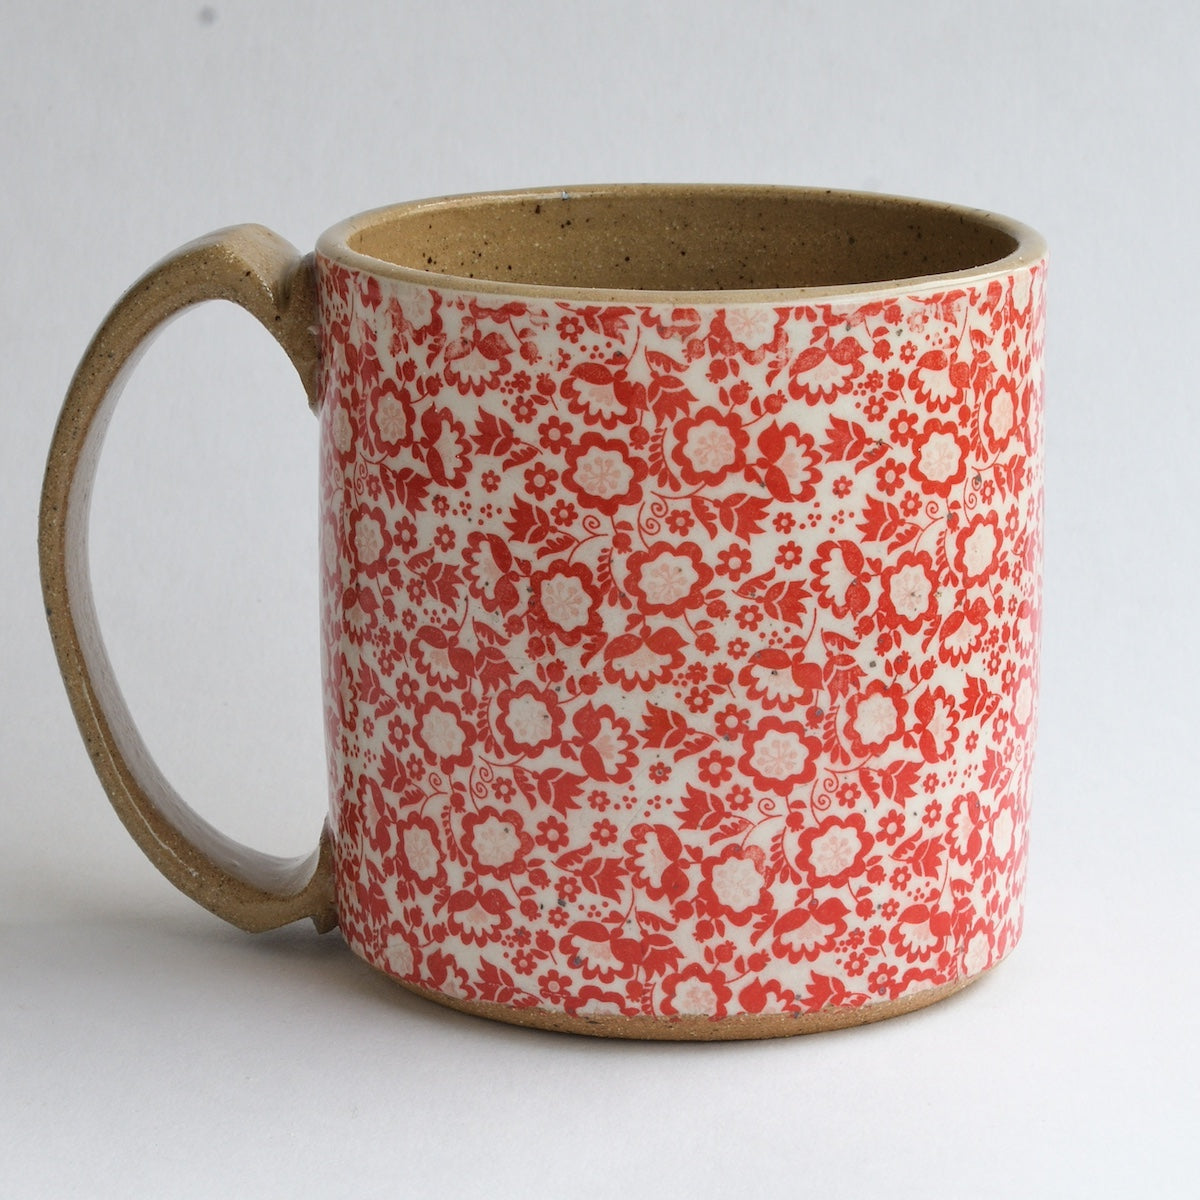 Rustic Red Floral Mug